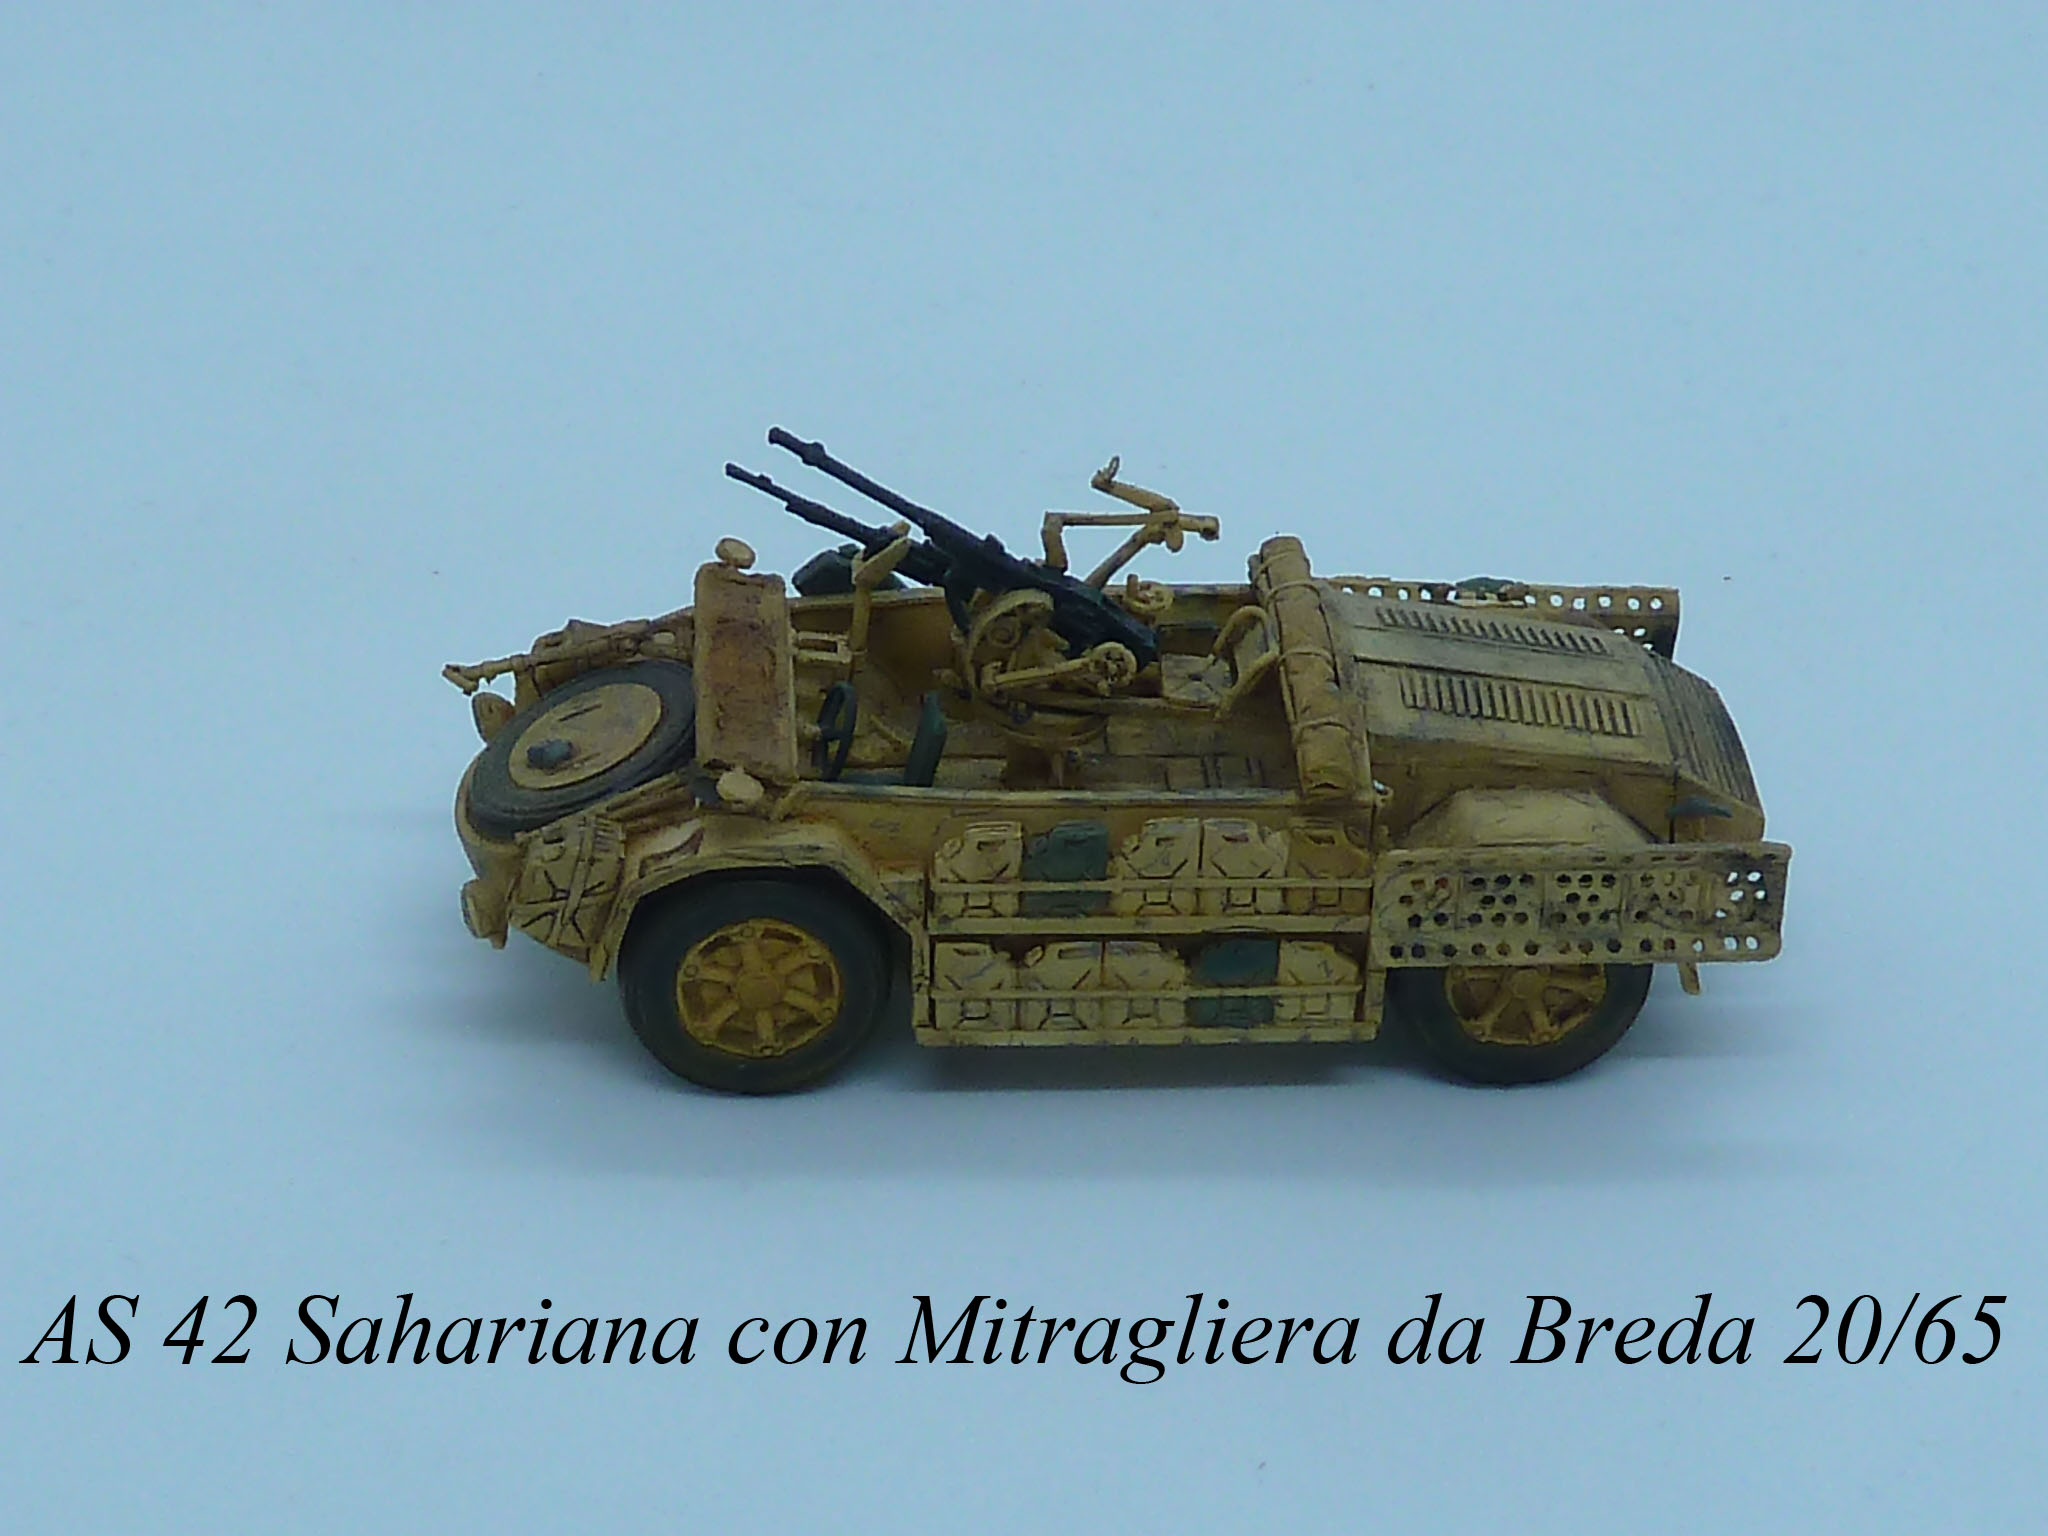 SPA-Viberti AS 42 Sahariana con Mitragliera Breda 20/65